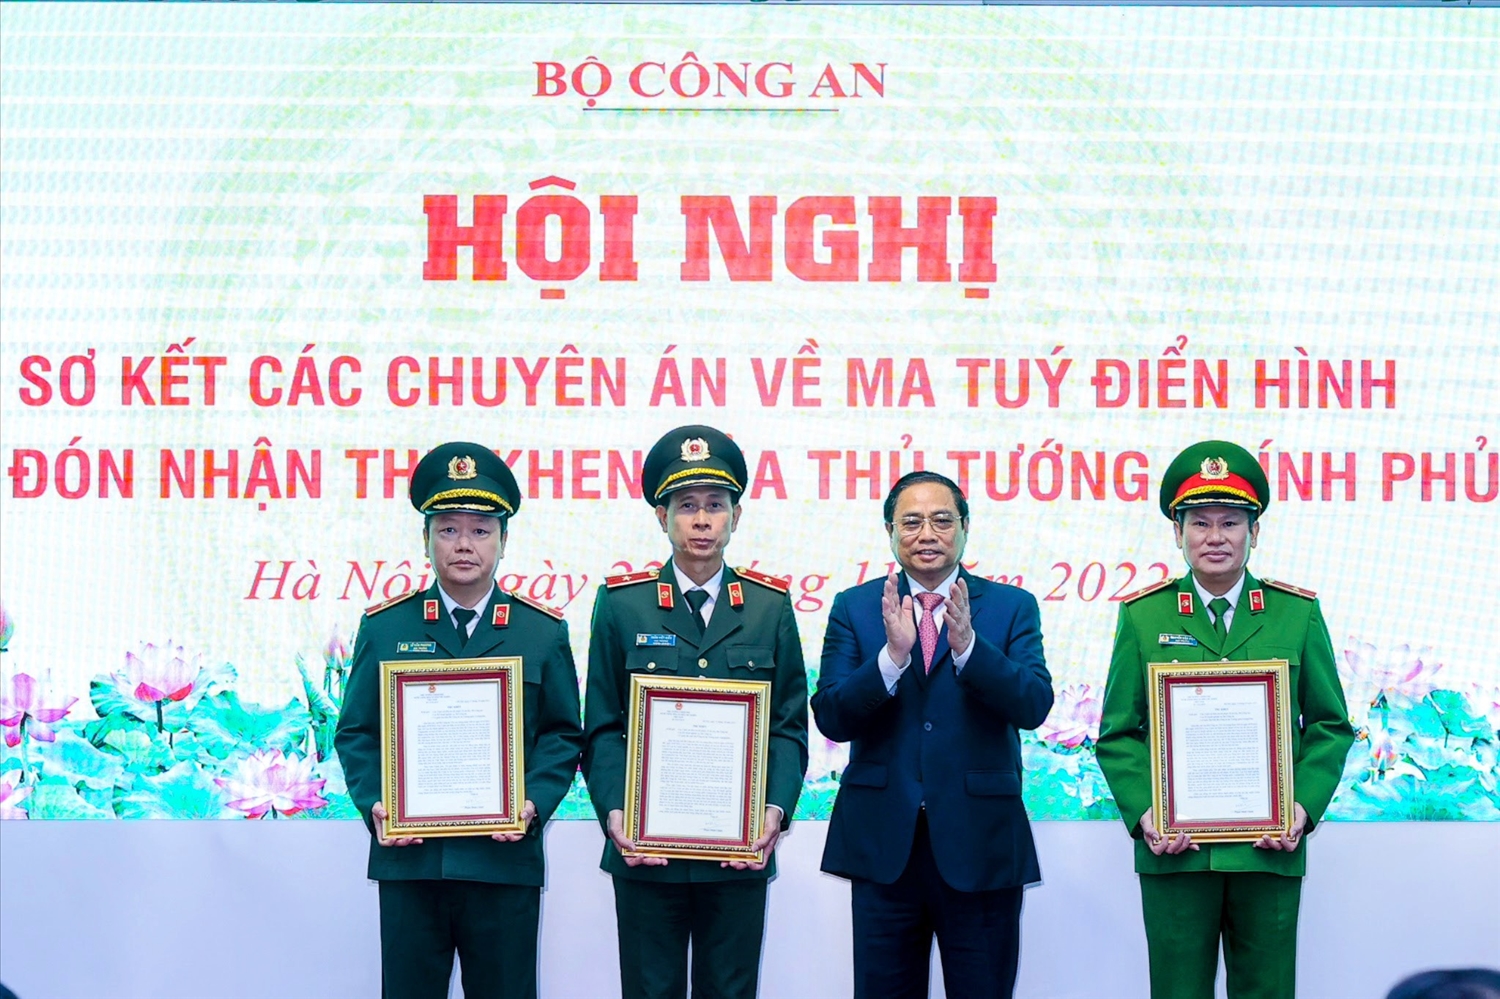 Thủ tướng Phạm Minh Chính trao thư khen cho các tập thể có thành tích xuất sắc trong các chuyên án về ma túy.